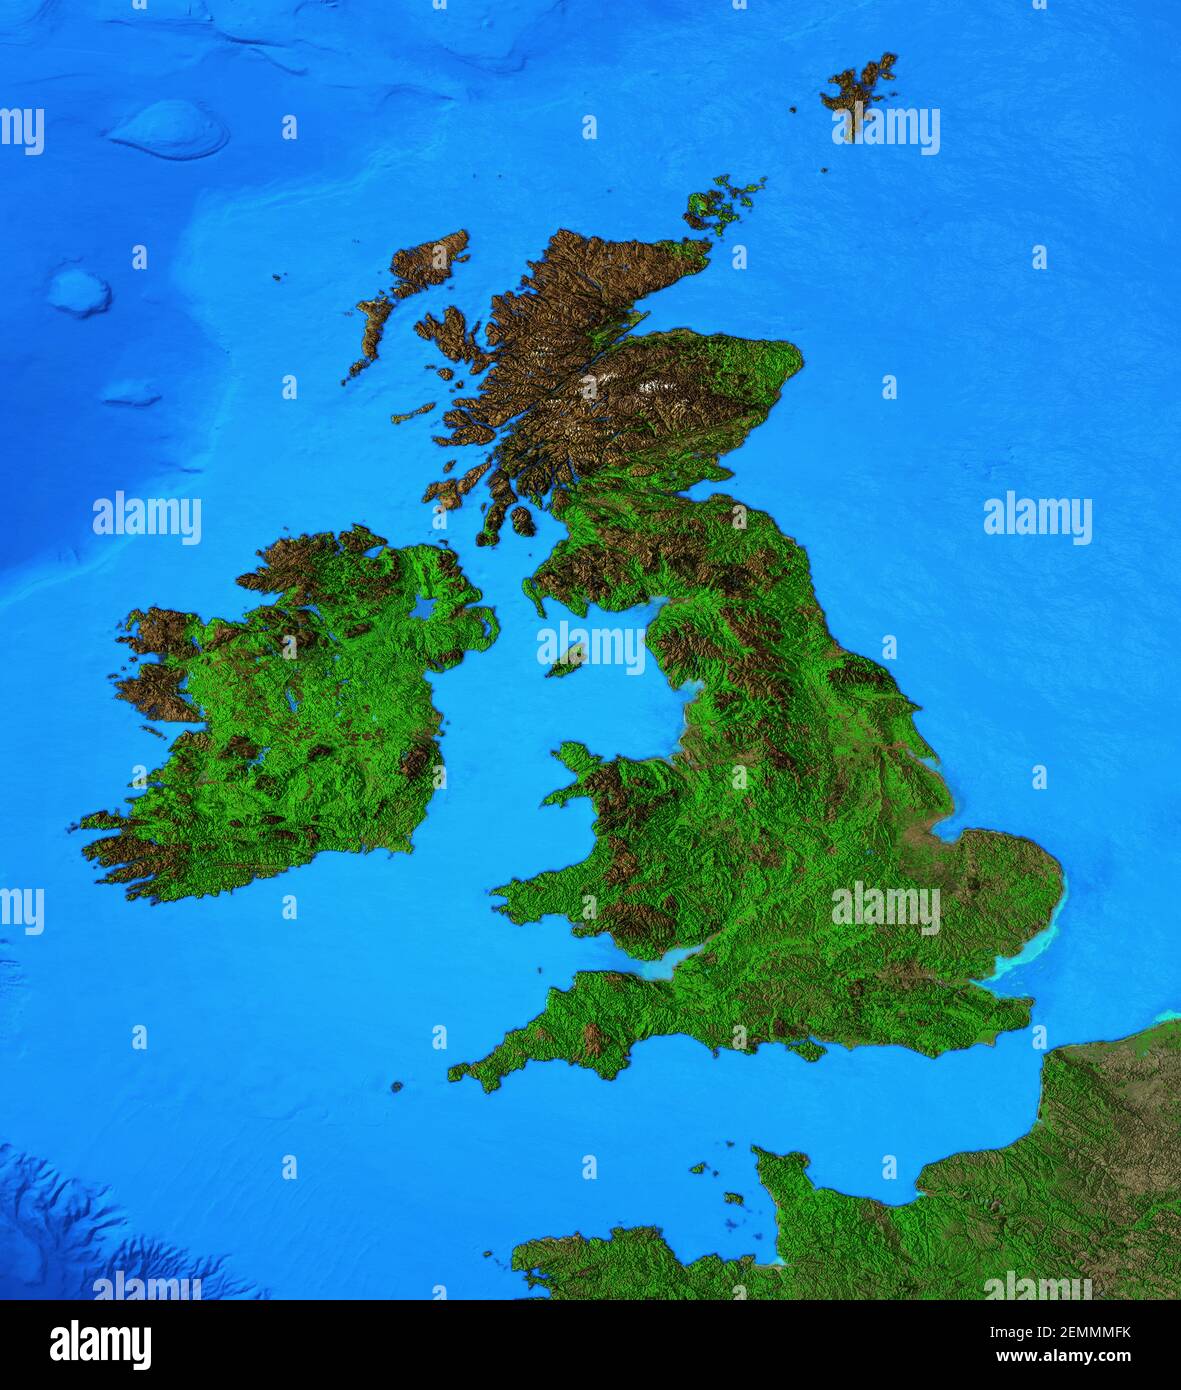 Carte physique de l'Angleterre, de la Grande-Bretagne et de l'Irlande. Vue plate détaillée de la planète Terre et de ses formes terrestres - éléments fournis par la NASA Banque D'Images